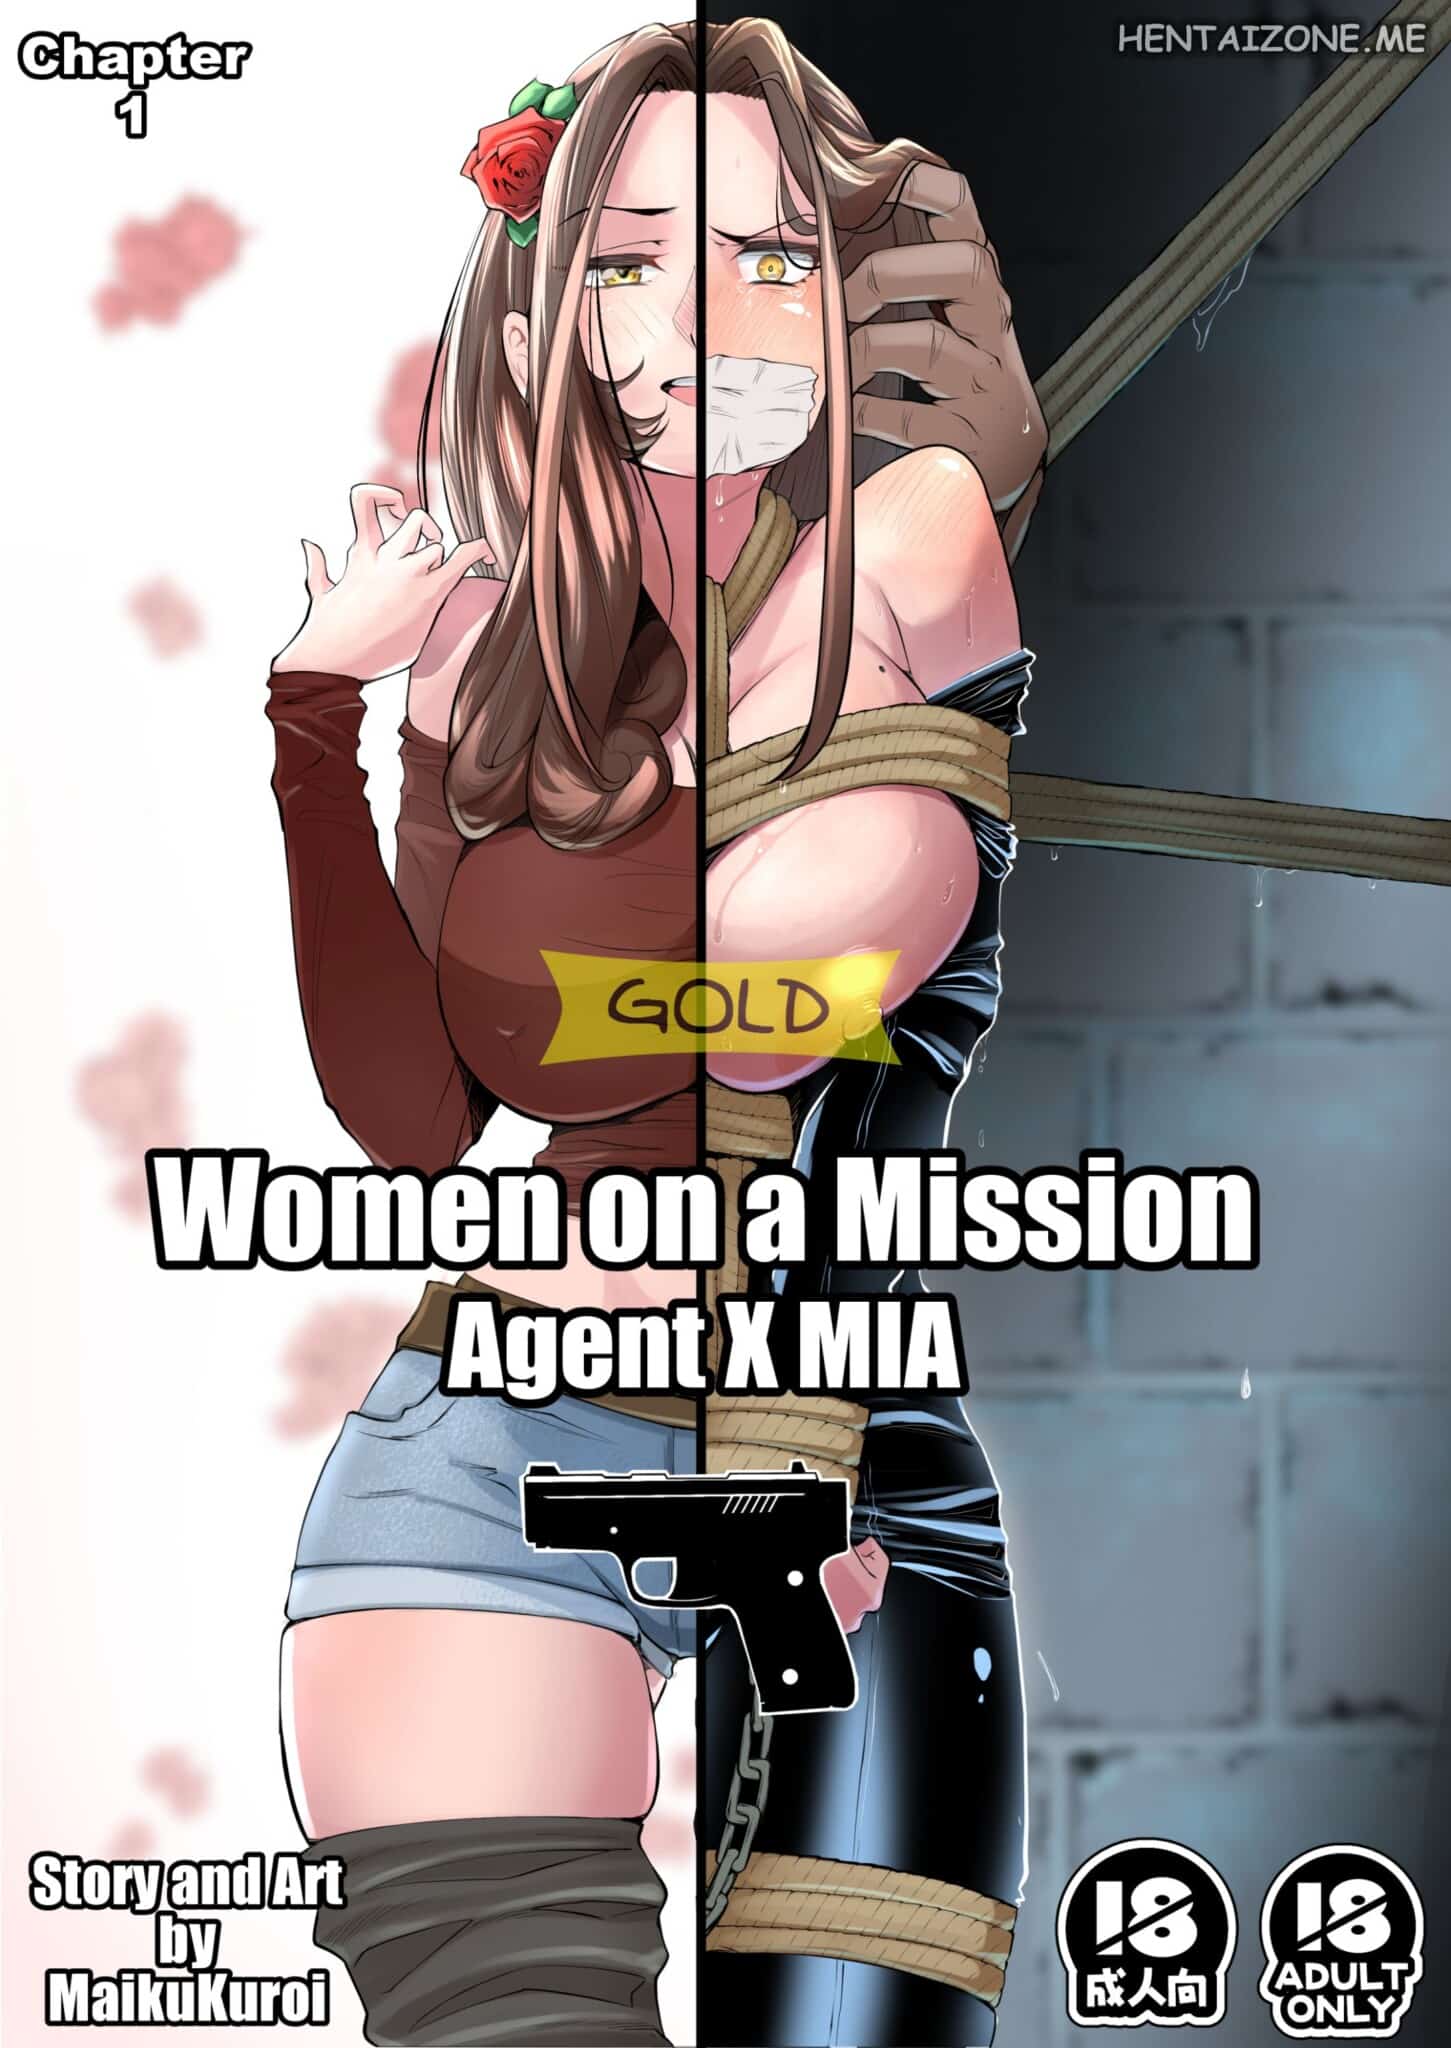 Donne in missione – Agente Mia